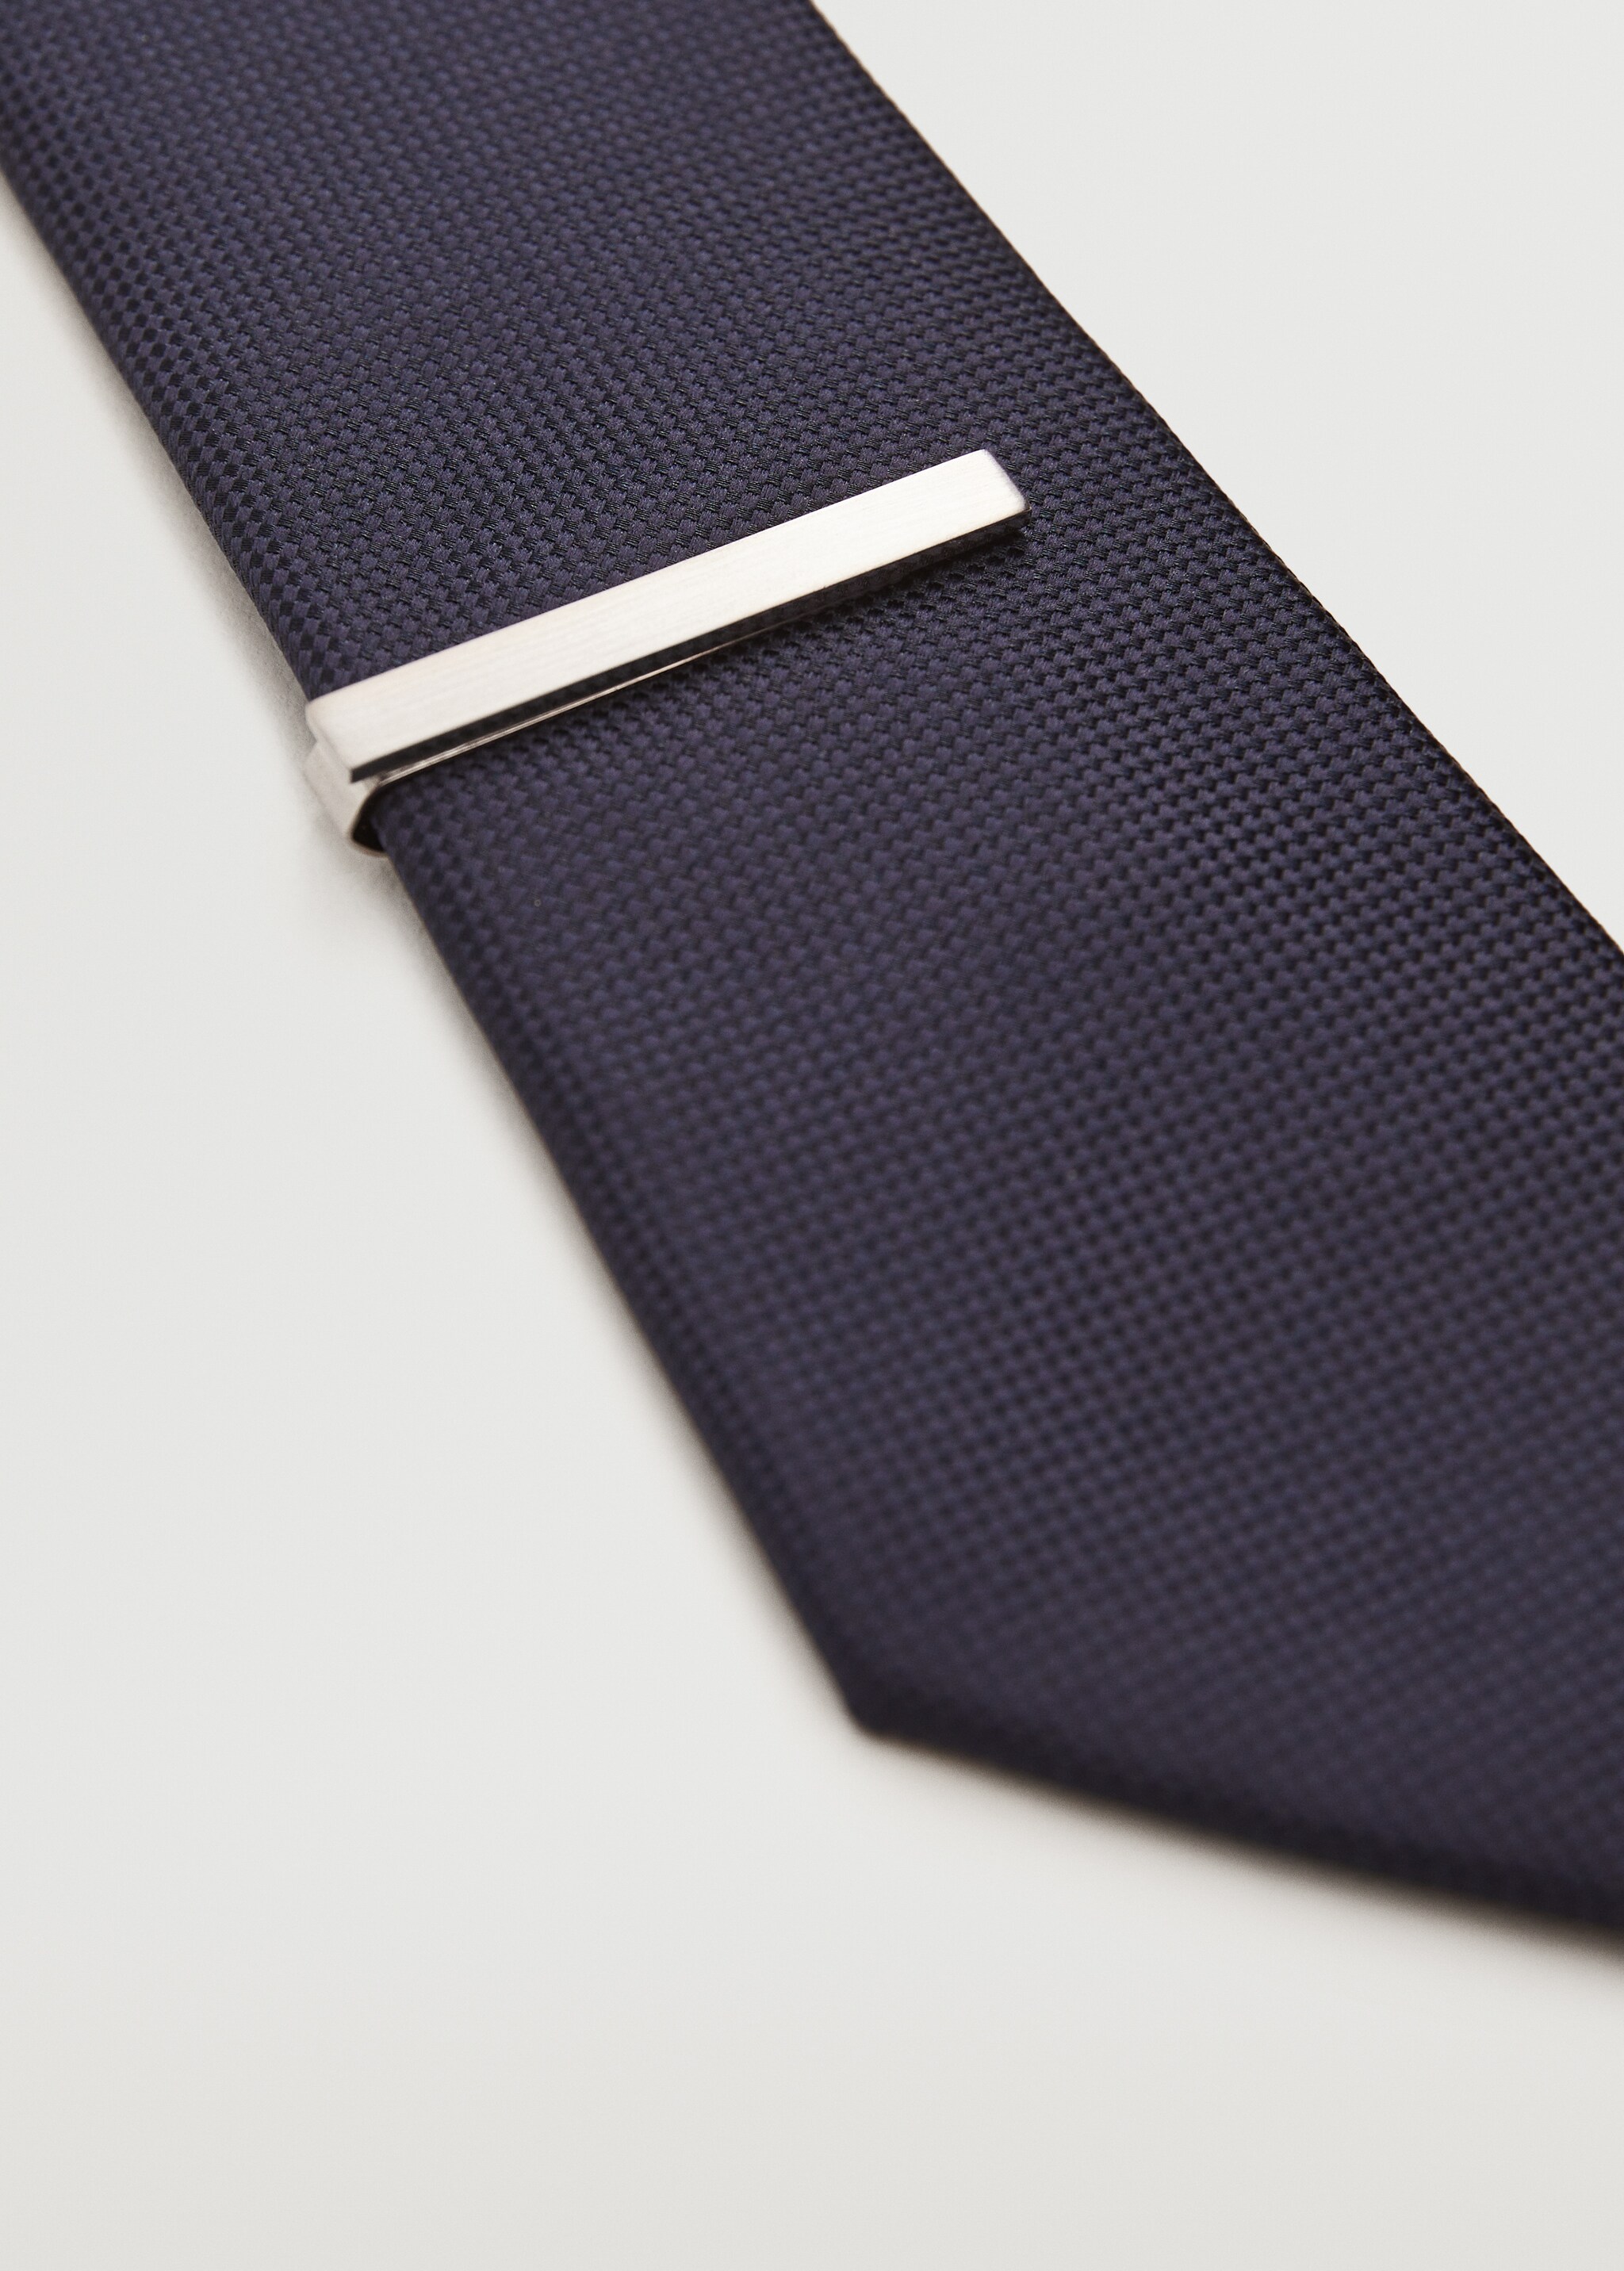 Passador corbata metàl·lic - Detall de l'article 3